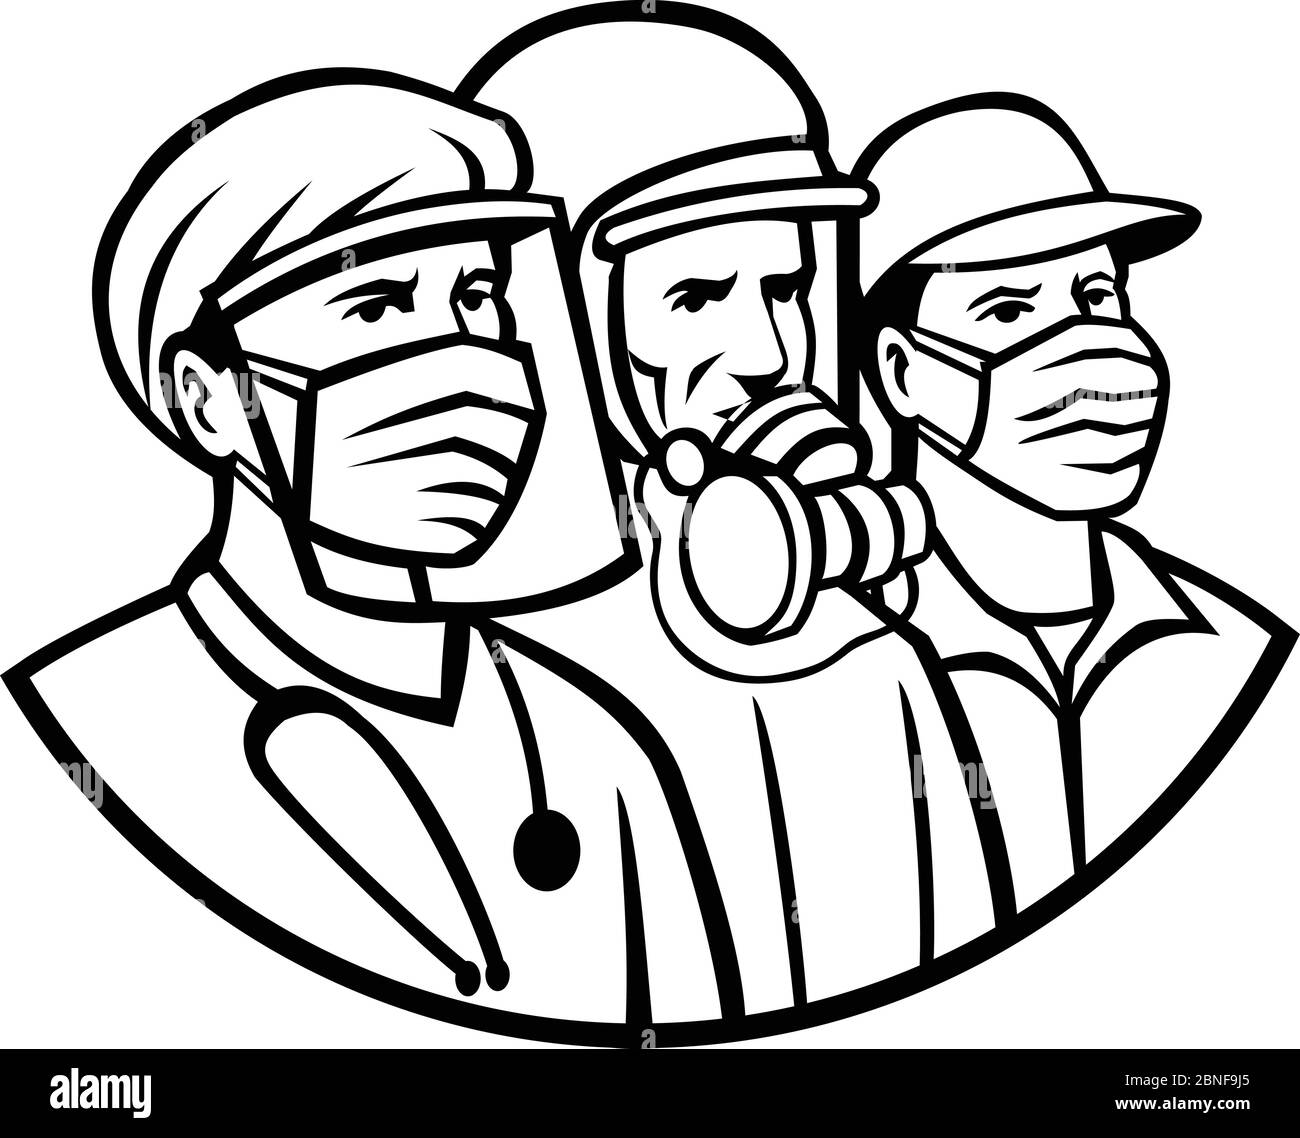 Mascot icona illustrazione di medico, infermiere, medico, assistenza sanitaria, soldato o lavoratore essenziale indossare maschera chirurgica come eroi in nero e. Illustrazione Vettoriale